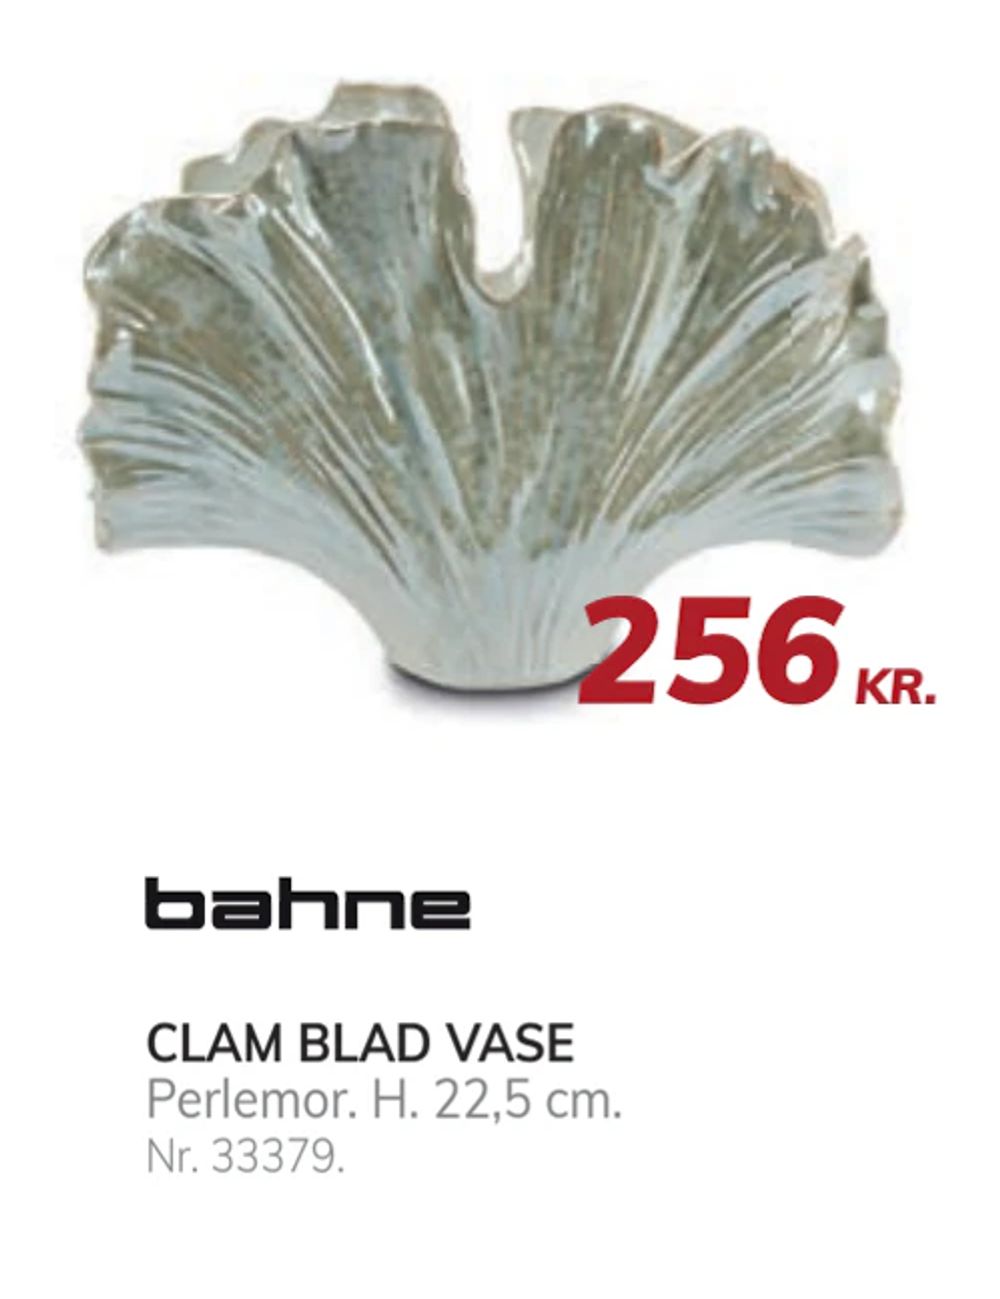 Tilbud på CLAM BLAD VASE fra Daells Bolighus til 256 kr.